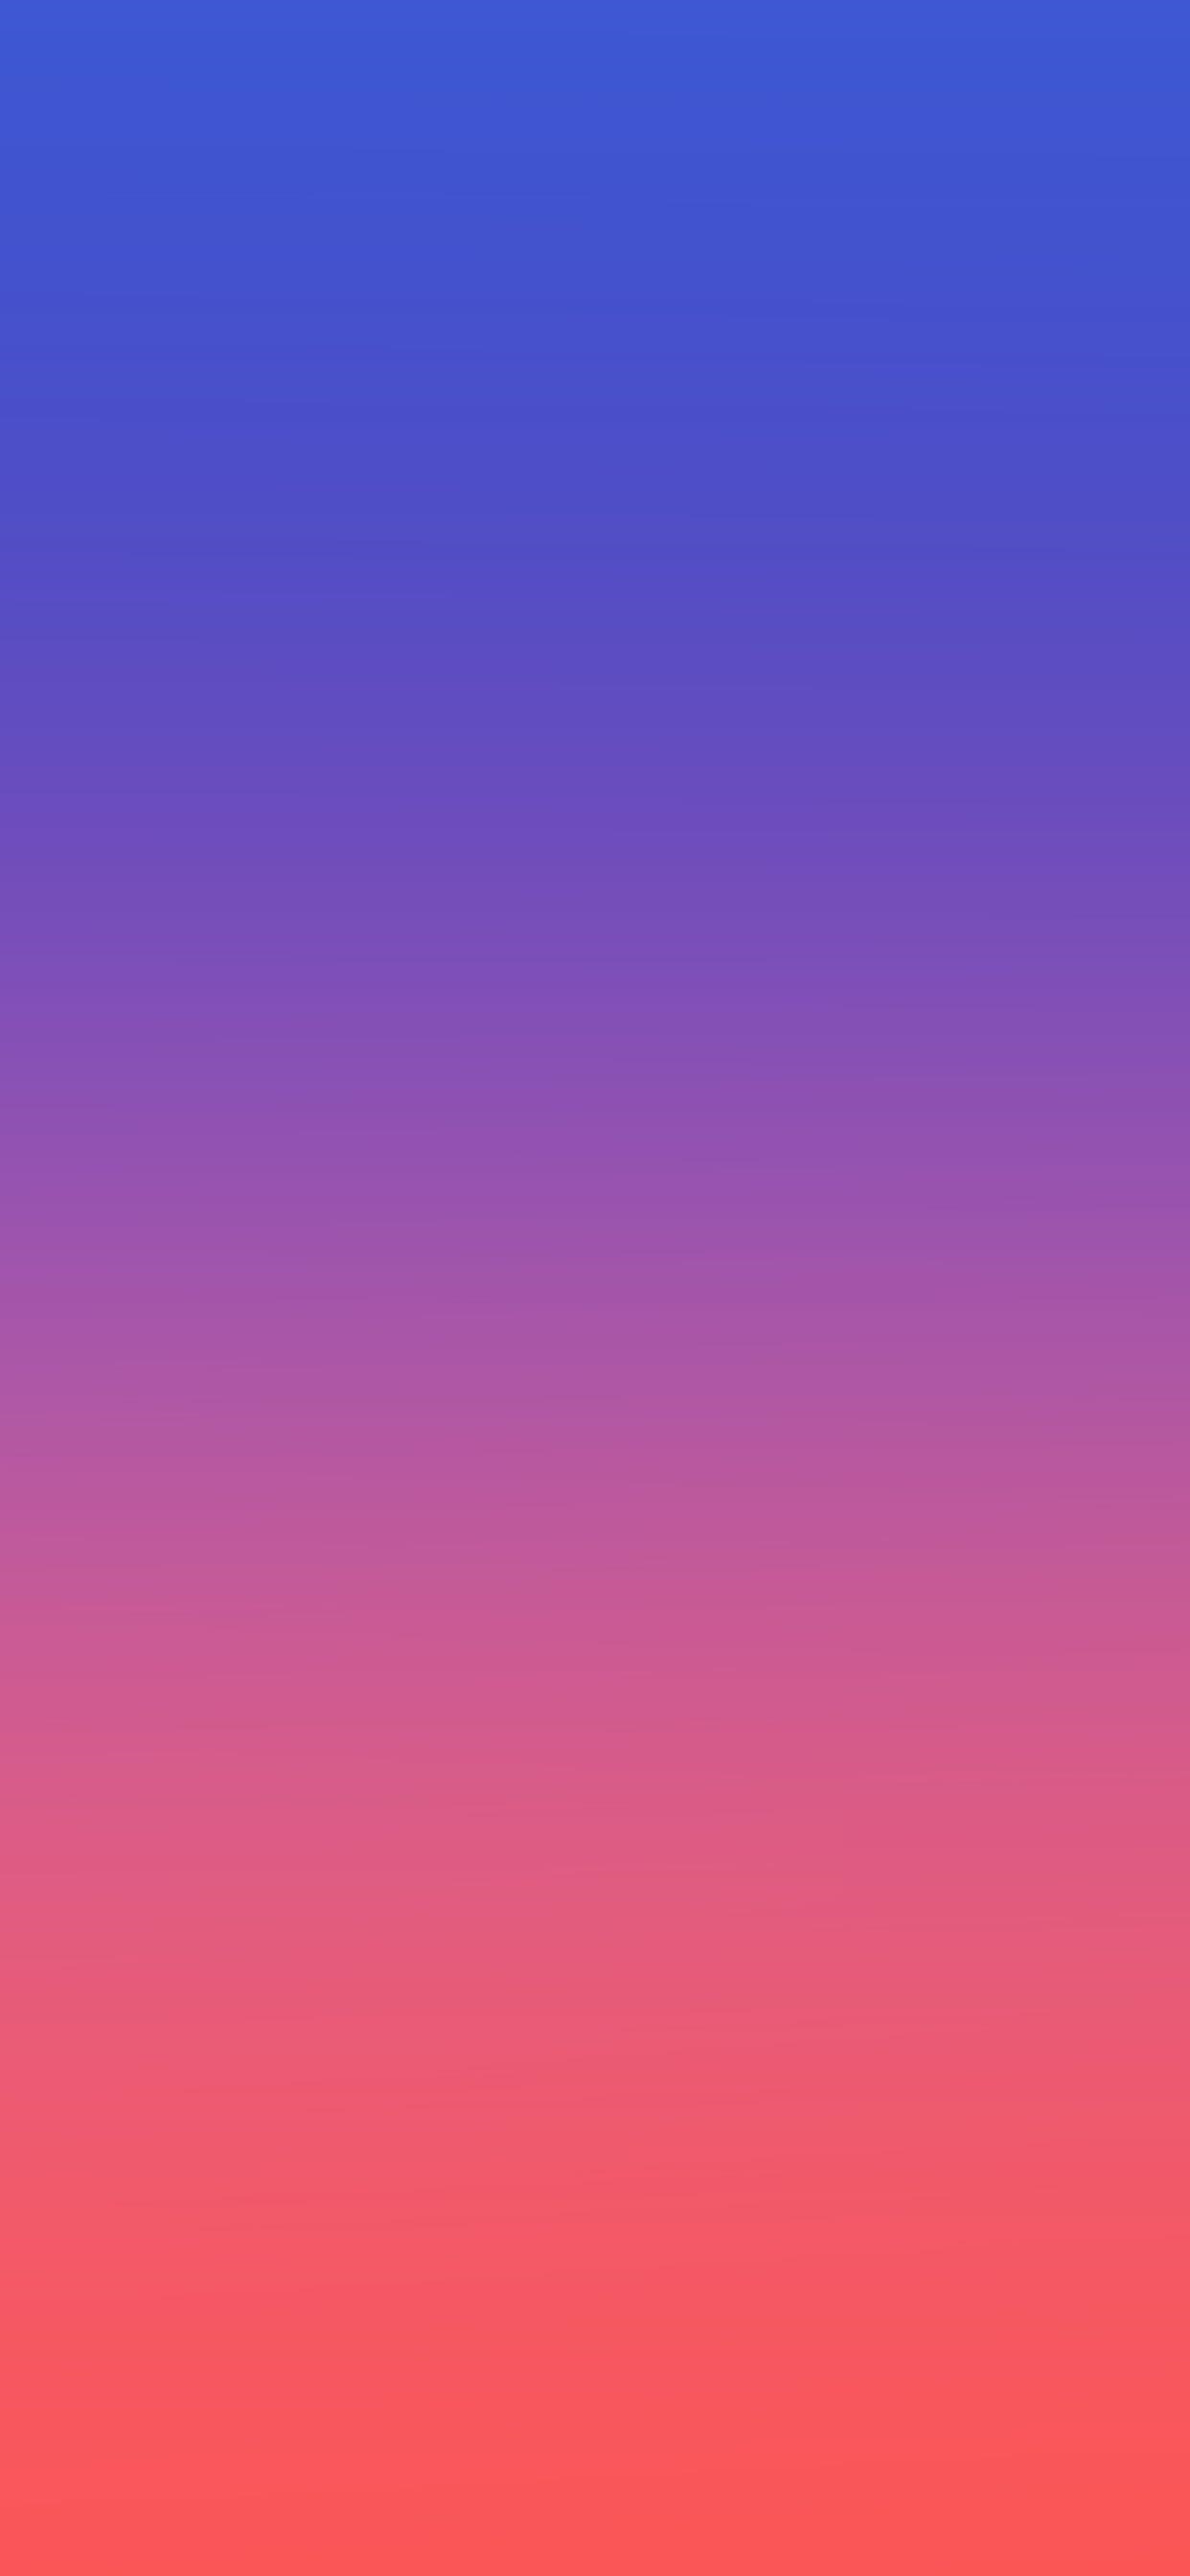 サムスンの壁紙,青い,空,バイオレット,ピンク,紫の